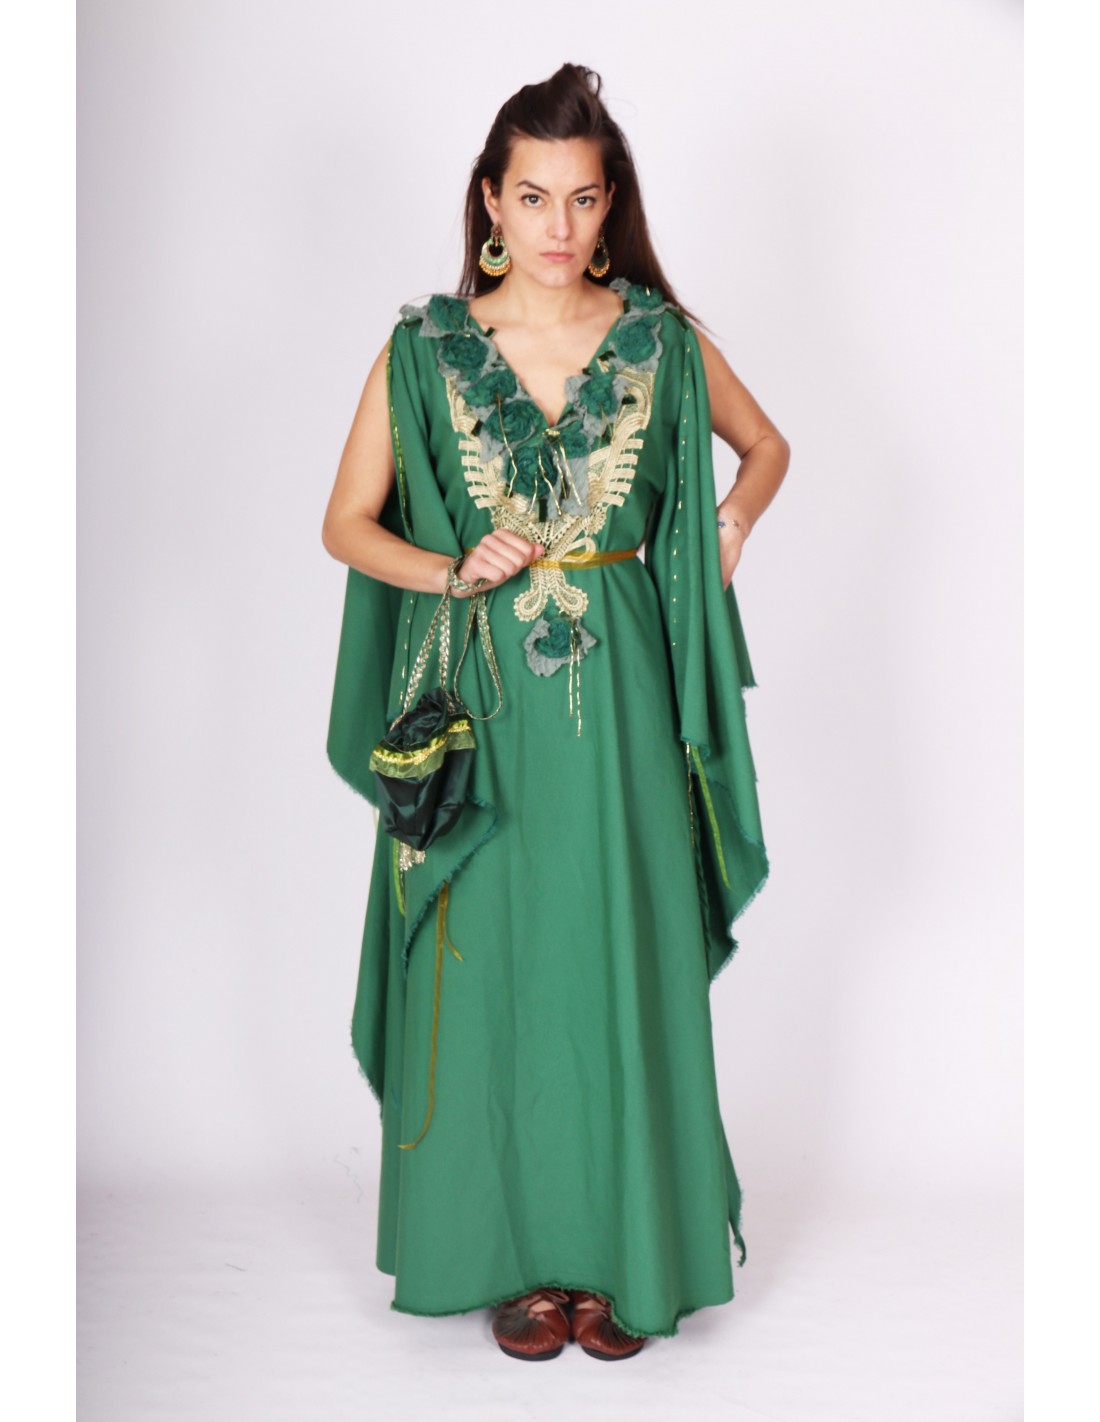 Vestido medieval verde y dorado con flores